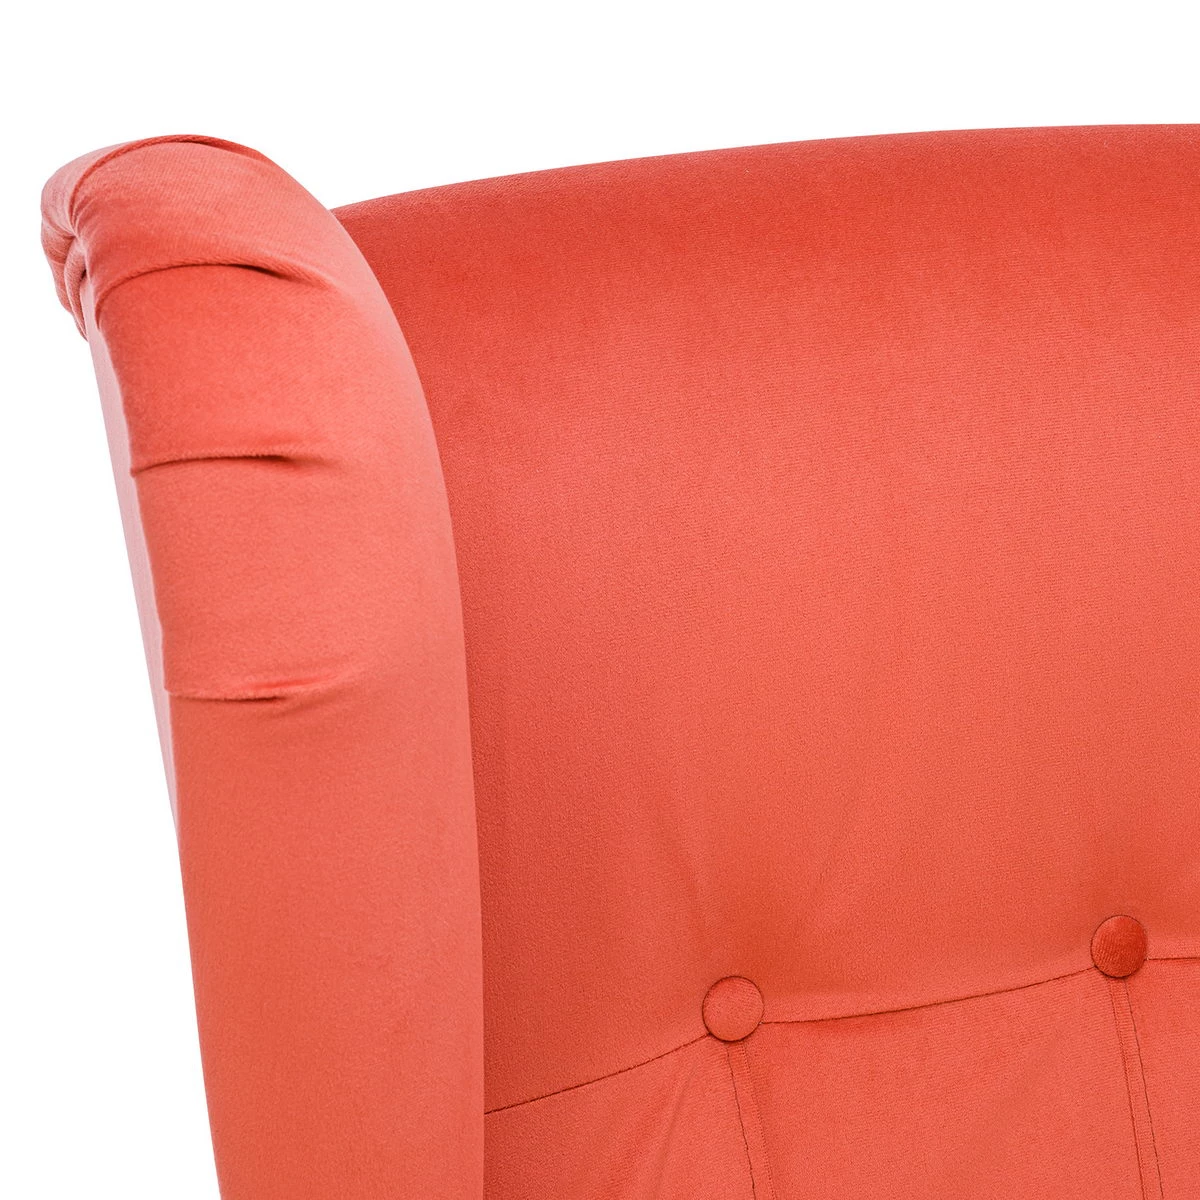 Кресло Leset Монтего (Импэкс). Цвет обивки: V39 оранжевый; Цвет ножек: Венге